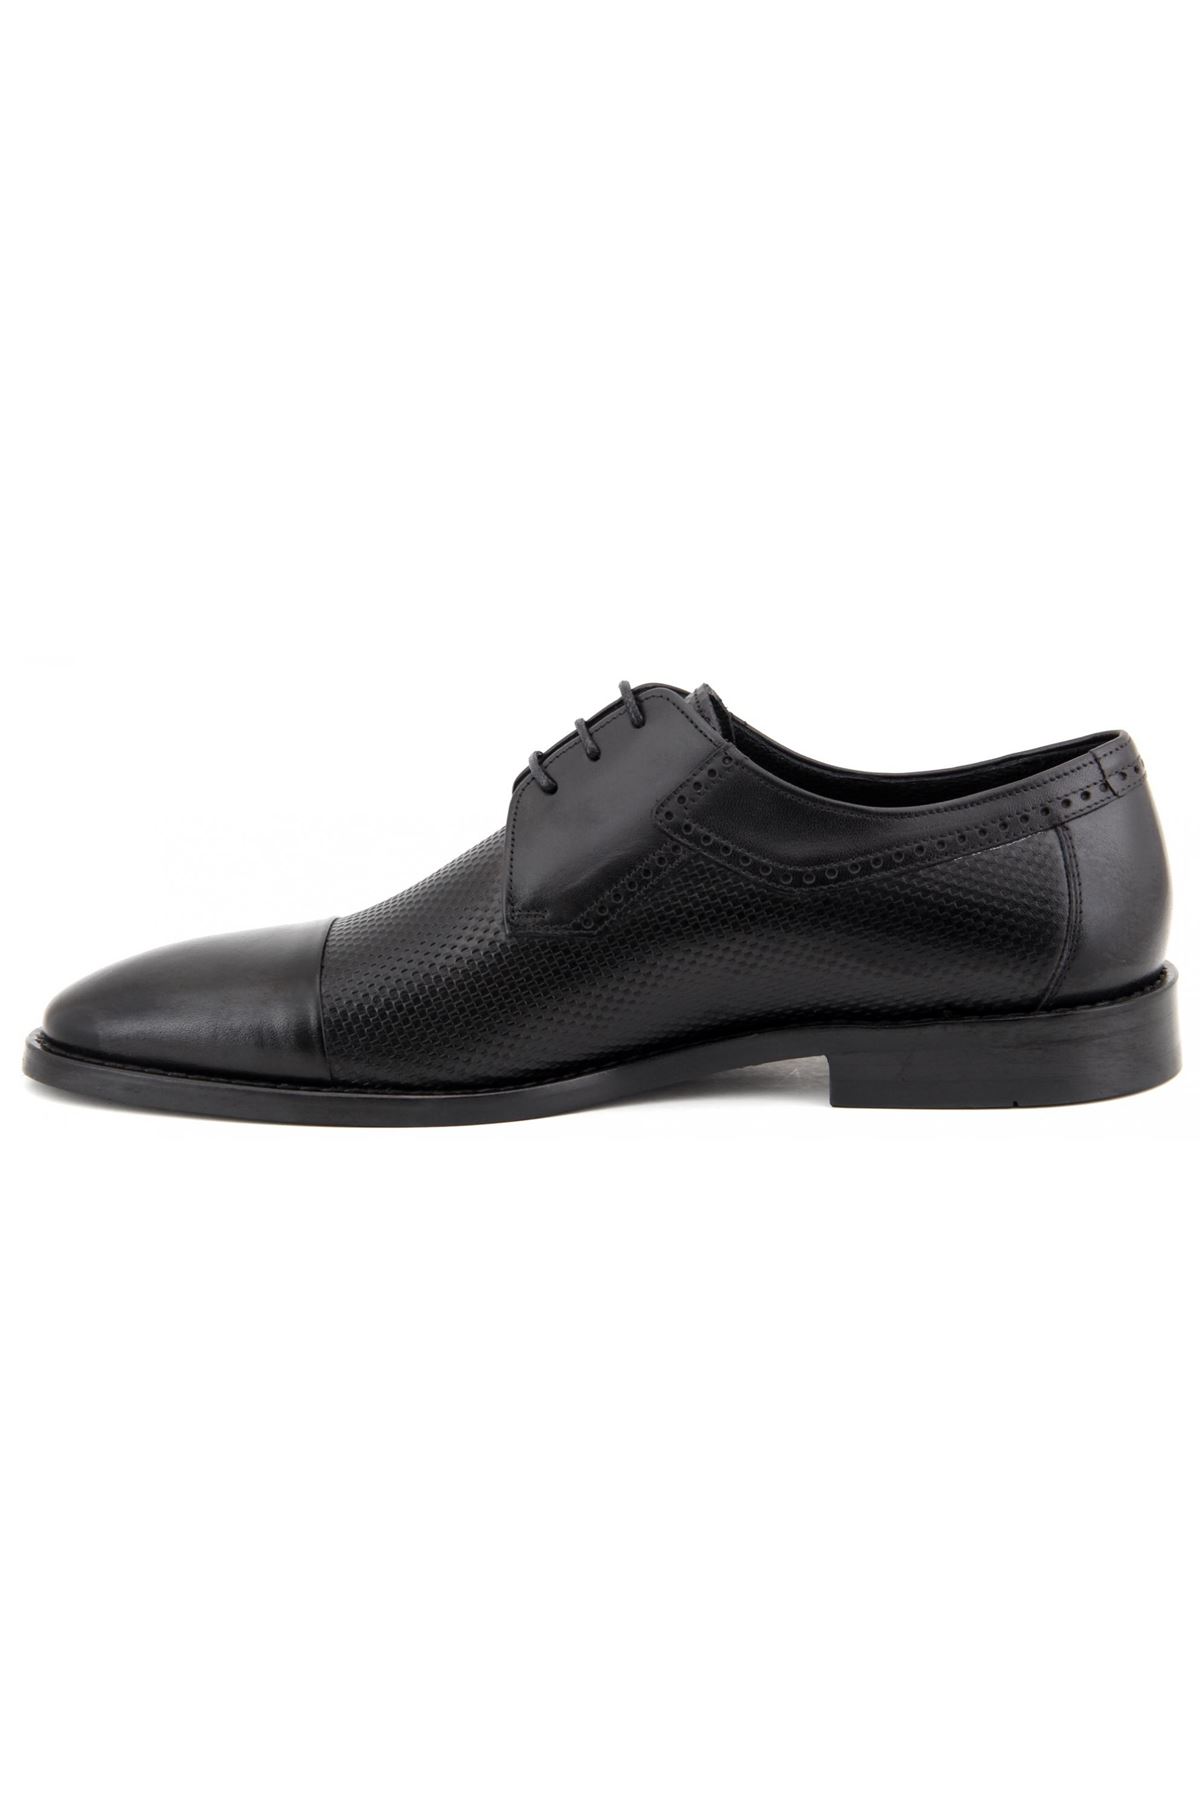 2880 Libero Klasik Erkek Ayakkabı - Siyah